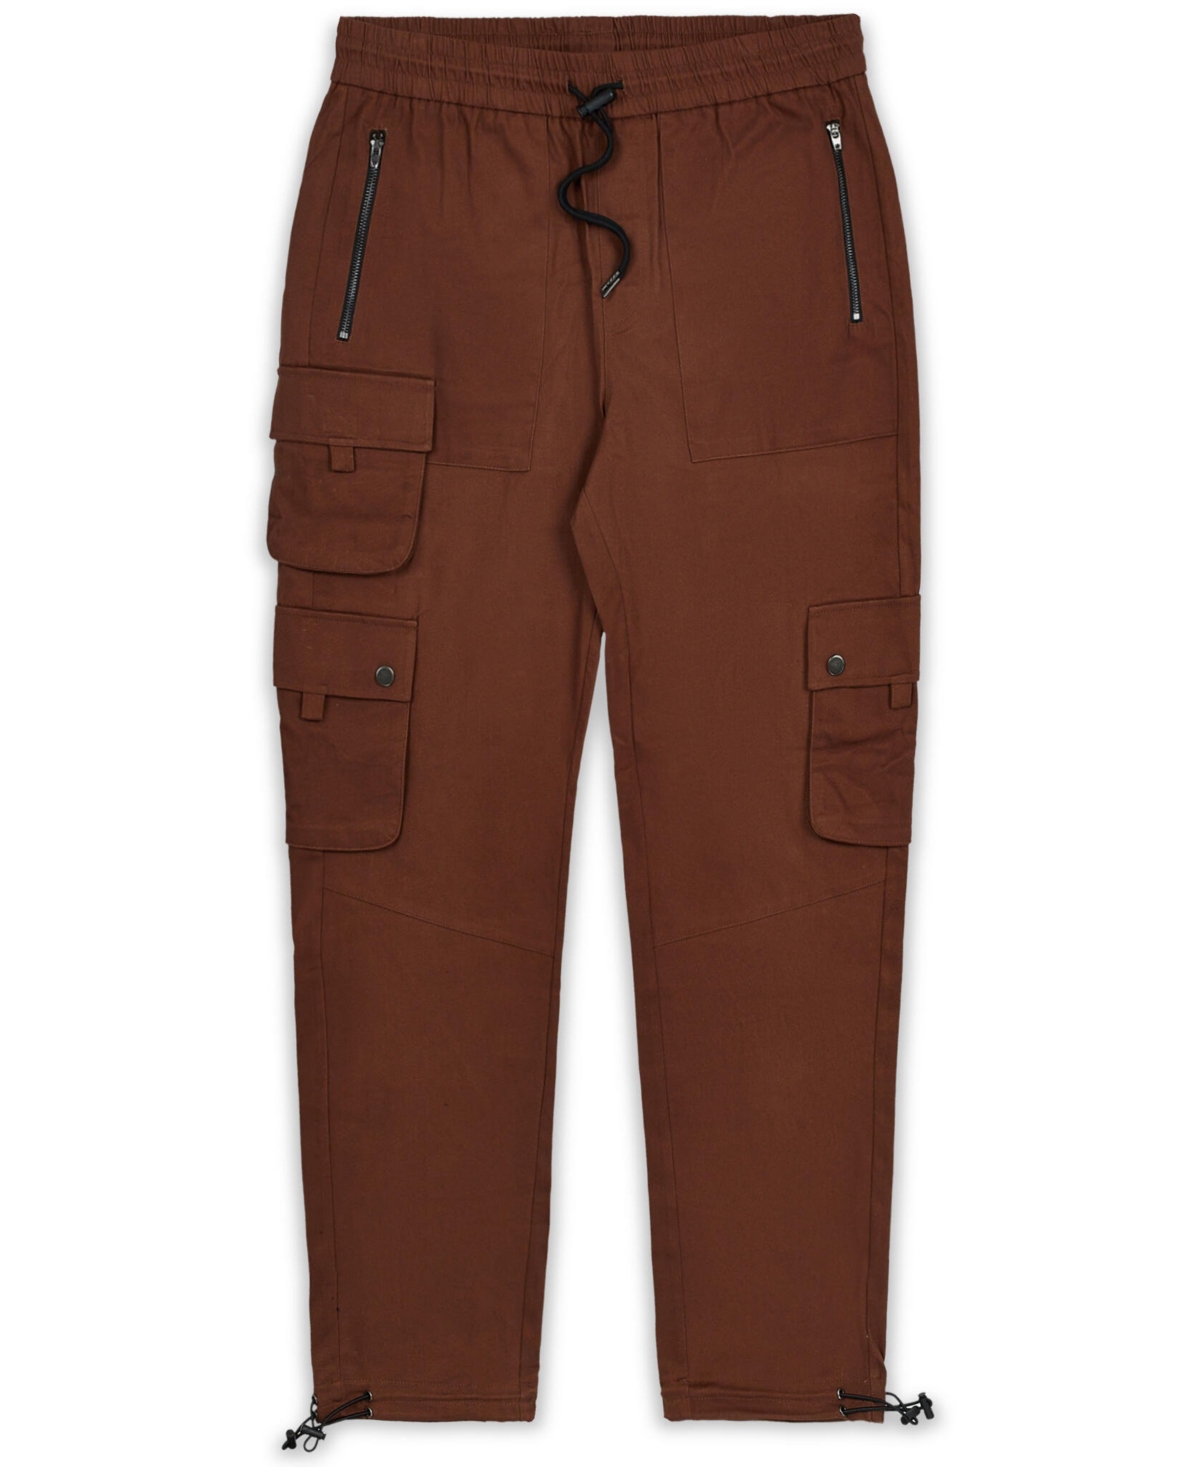 Men's Cargo Pants - Brown